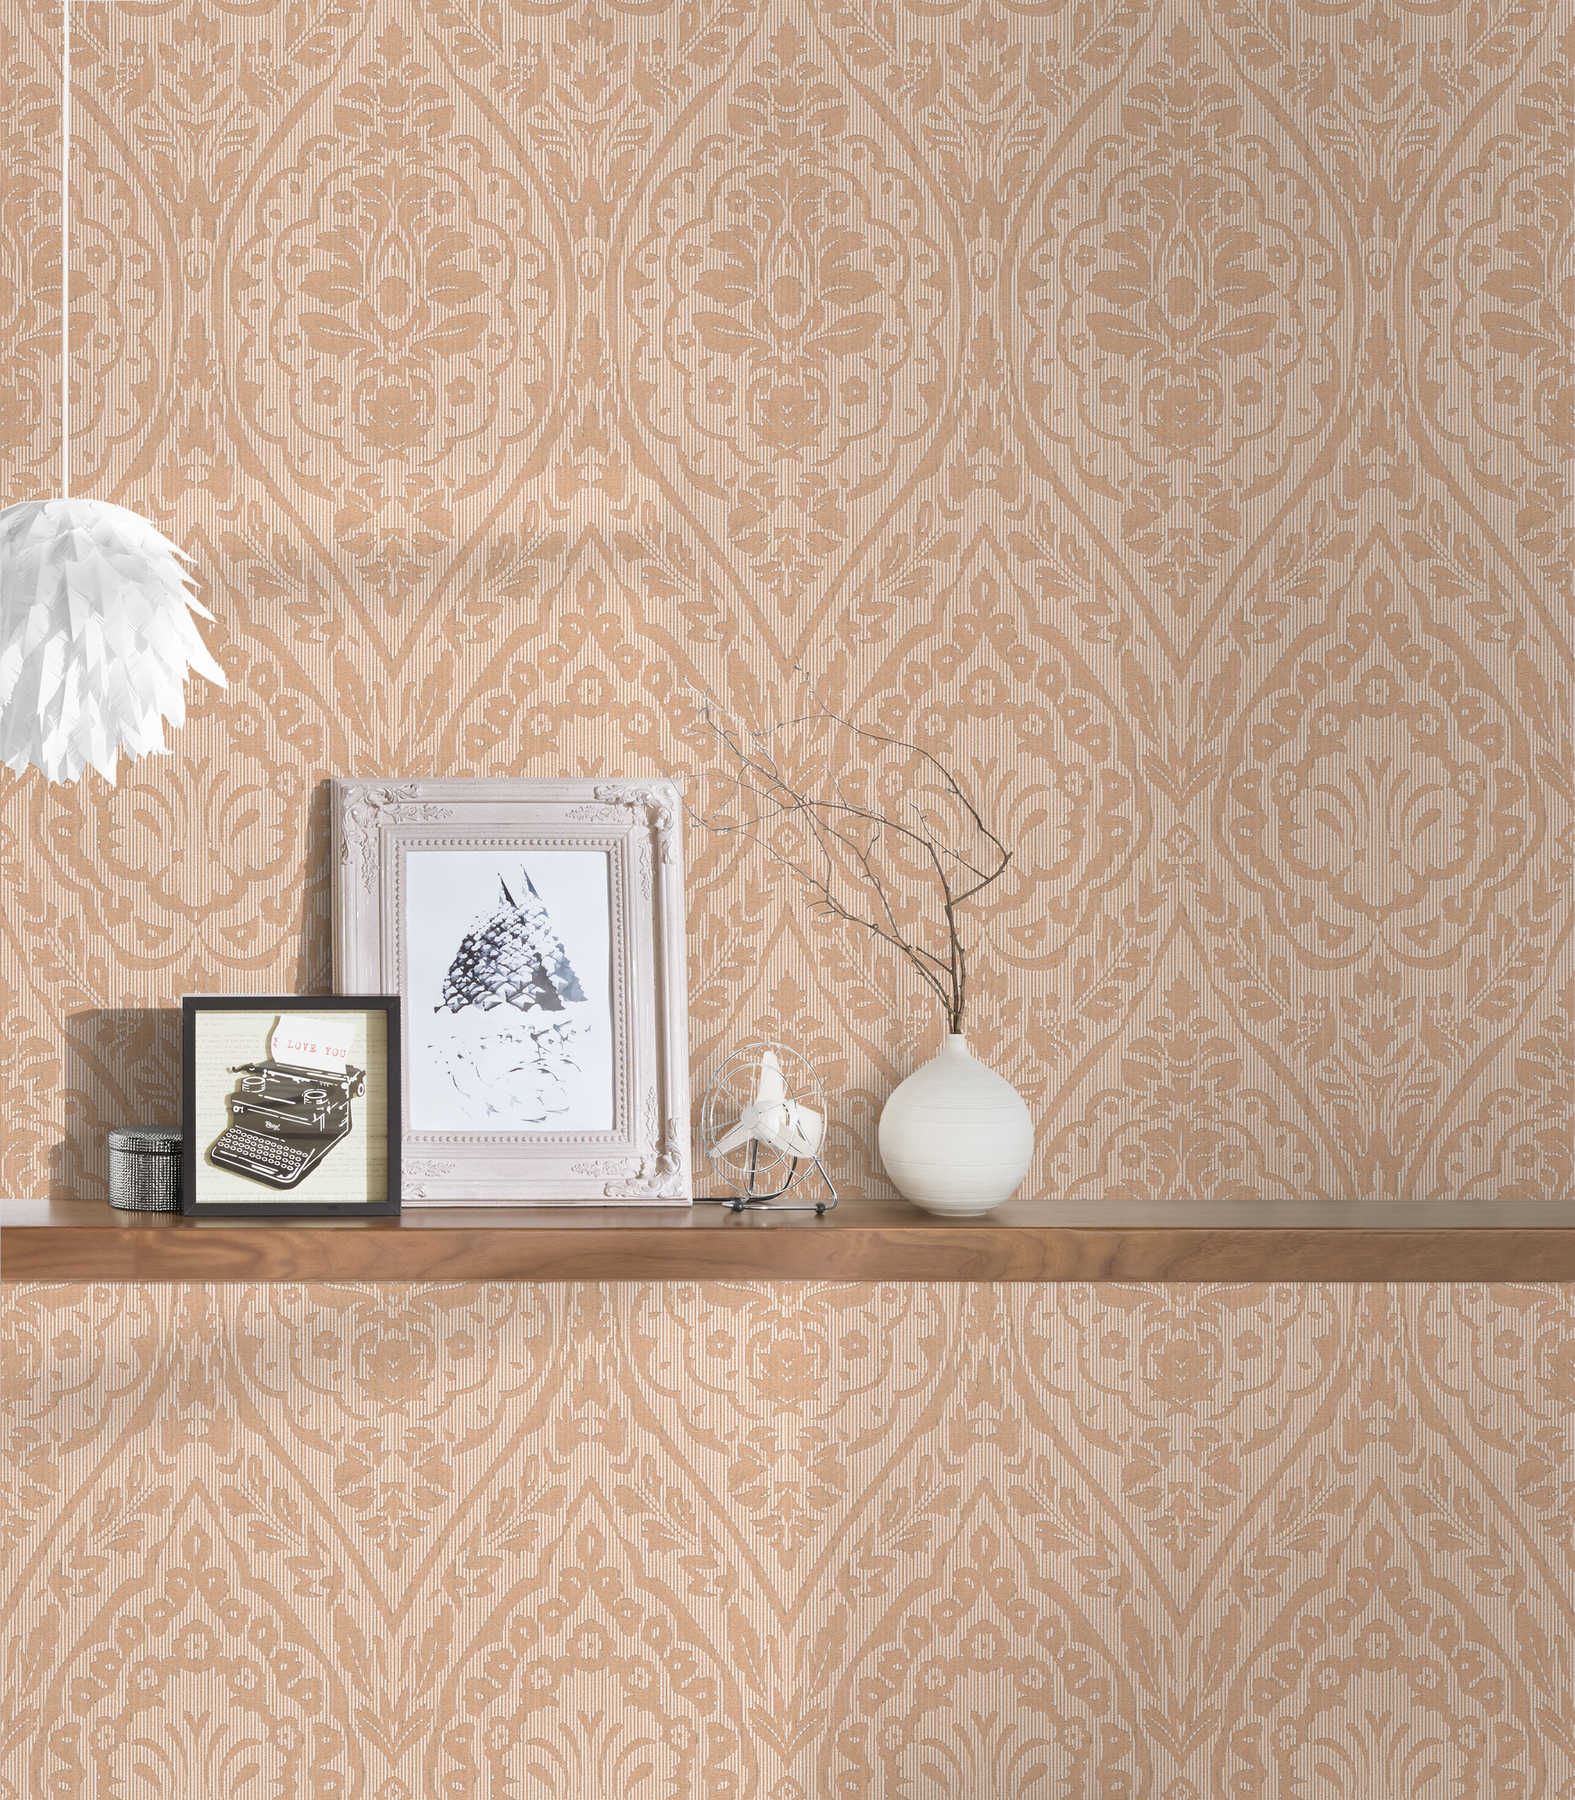             Vliesbehang met decoratief patroon & structuurdesign - beige, crème
        